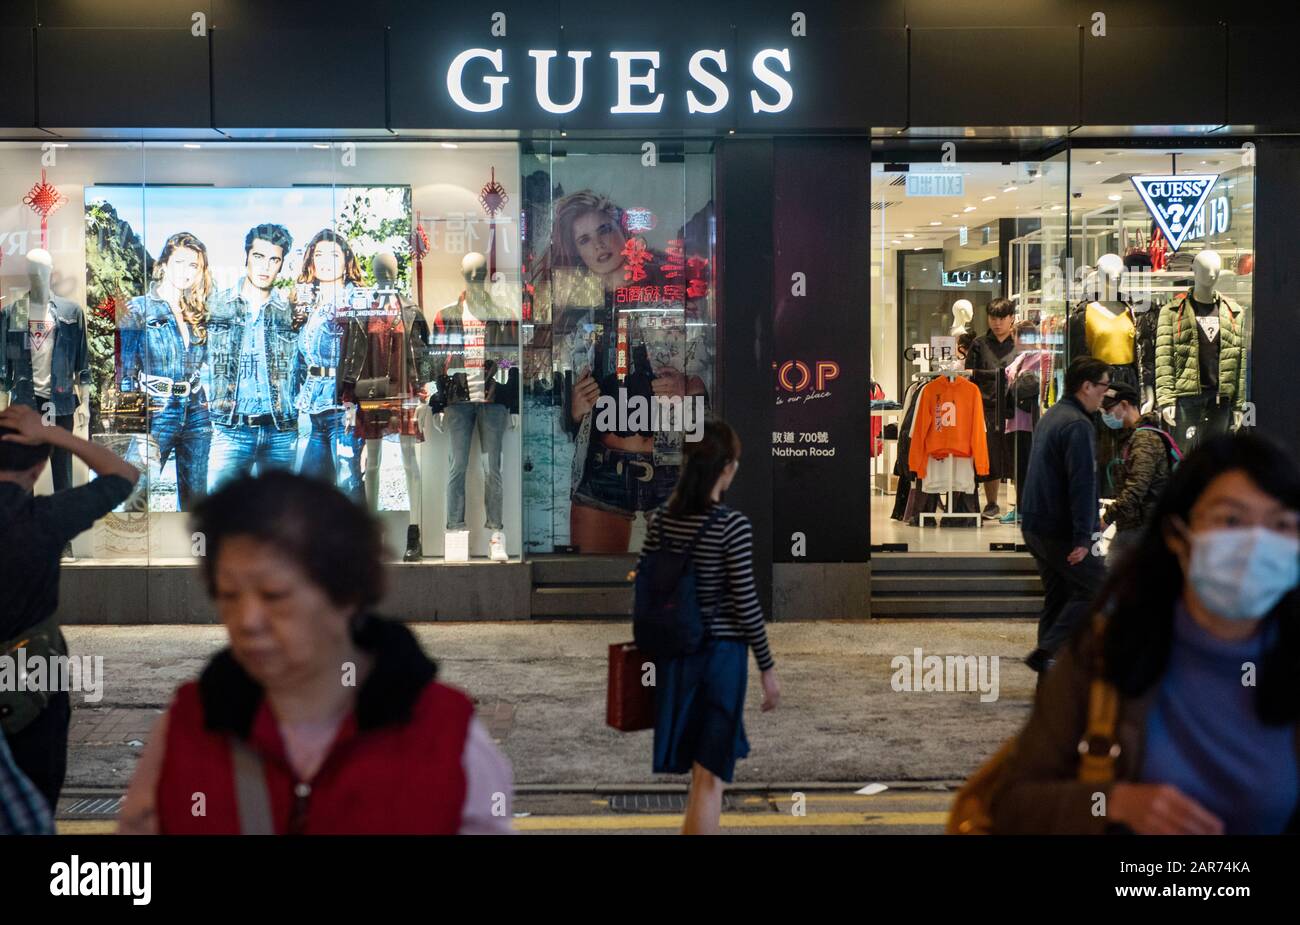 Marca de ropa americana y tienda De Venta al por menor Guess vista en Hong  Kong Fotografía de stock - Alamy